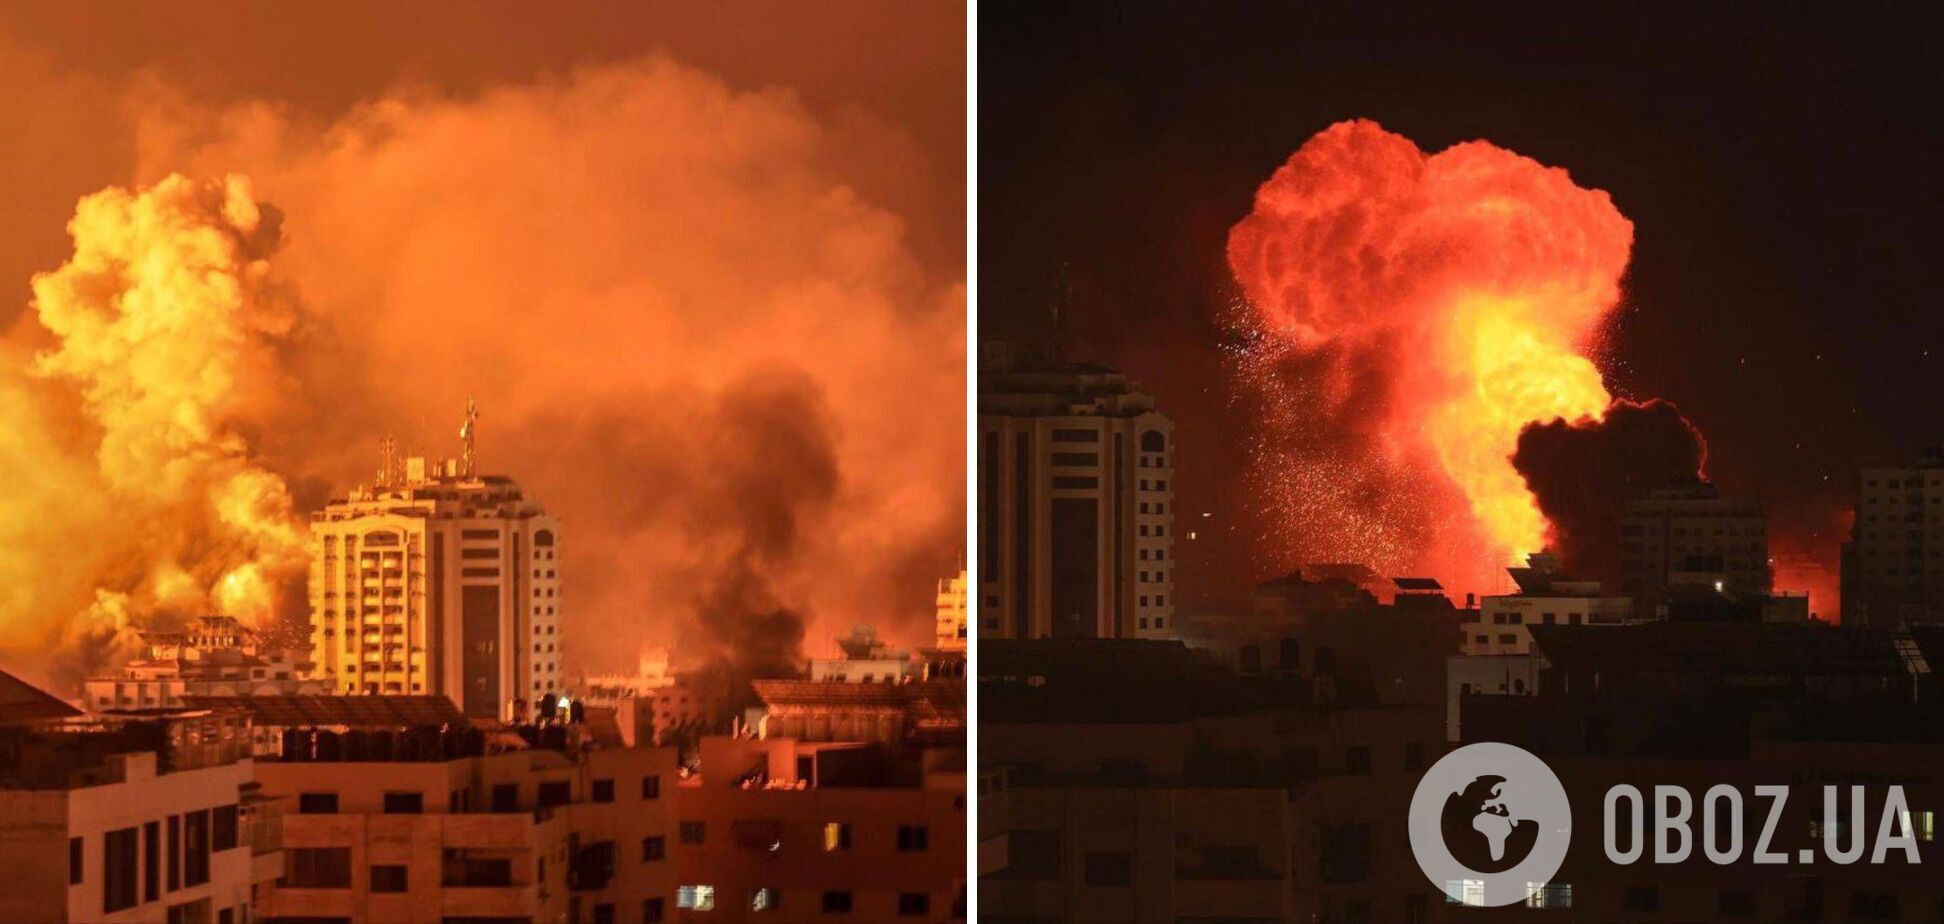 Третій день війни в Ізраїлі: ЦАХАЛ бомбардує штаби ХАМАС й готується до наземної операції в секторі Гази